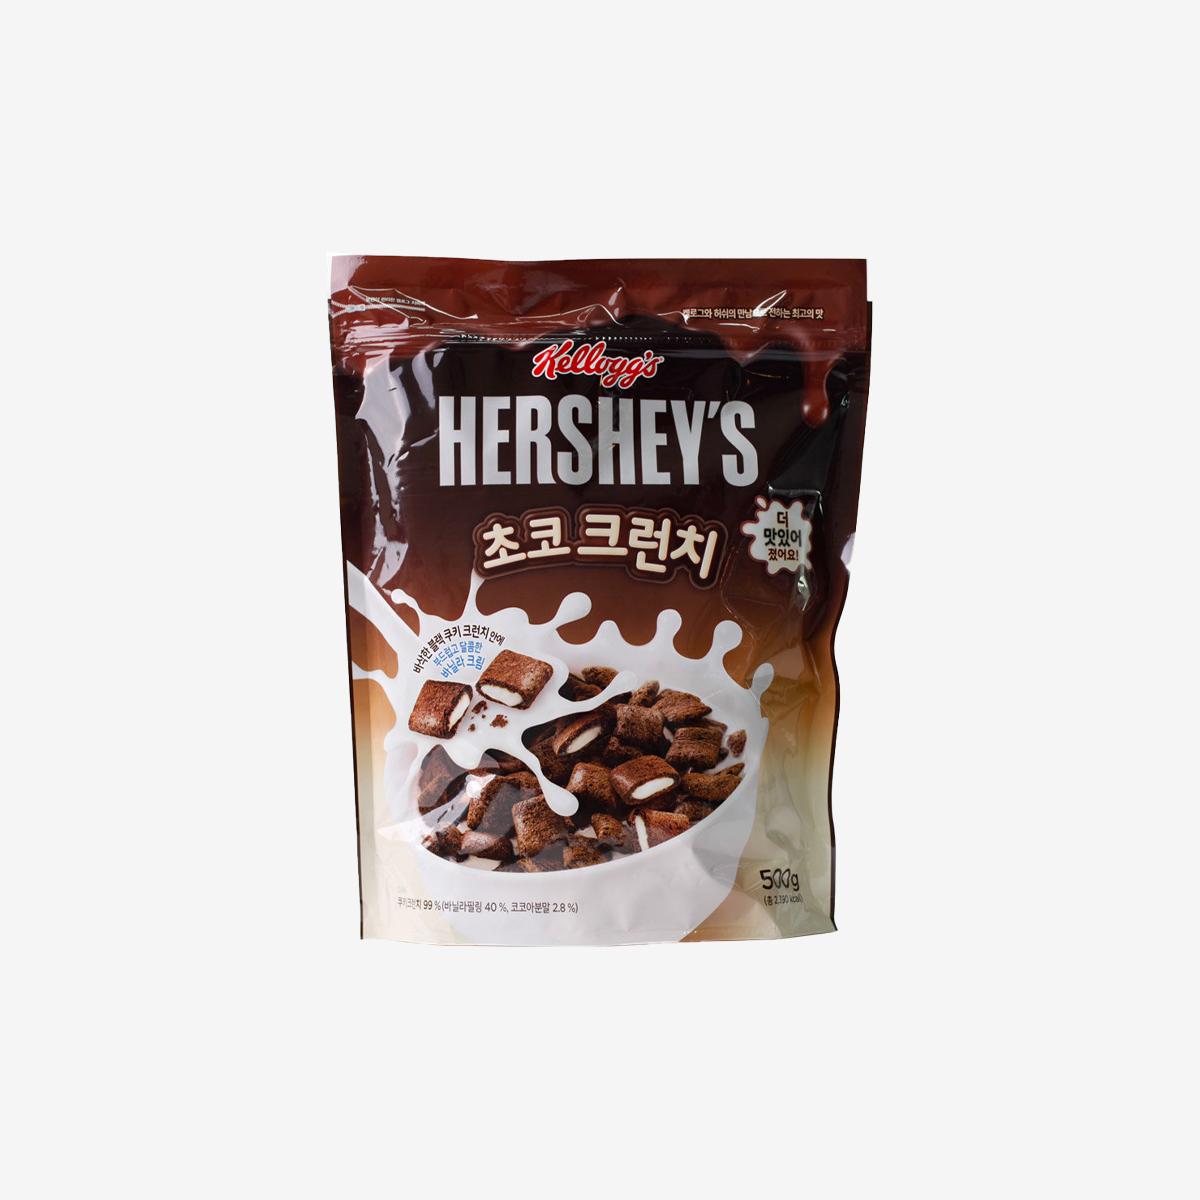 巧克力鮮奶油夾心麥片 (500g)